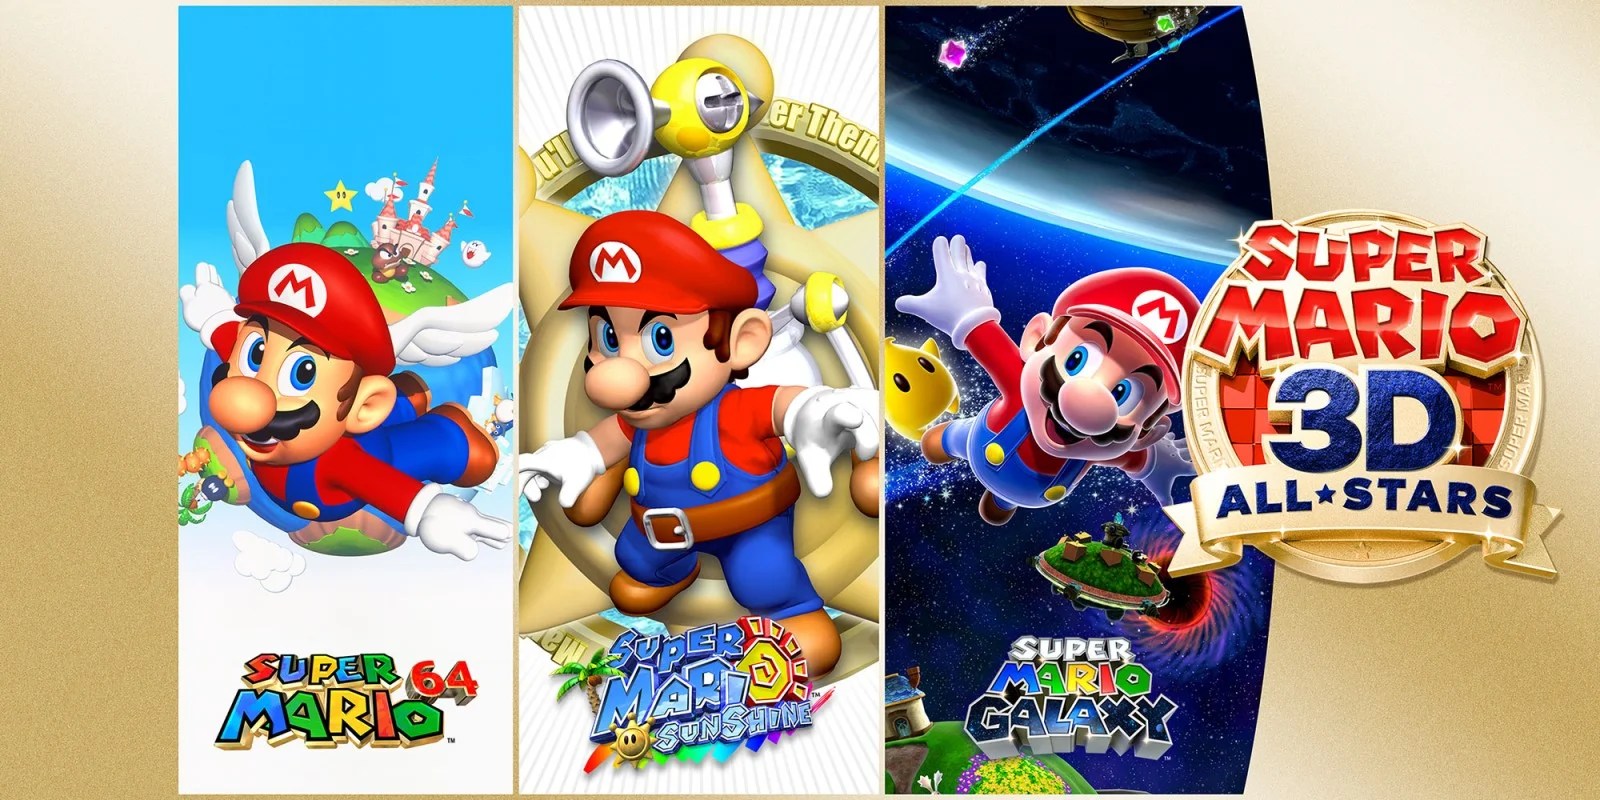 «Лучшие игры всех времен возвращаются»: критики высоко оценили Super Mario 3D All-Stars - фото 1